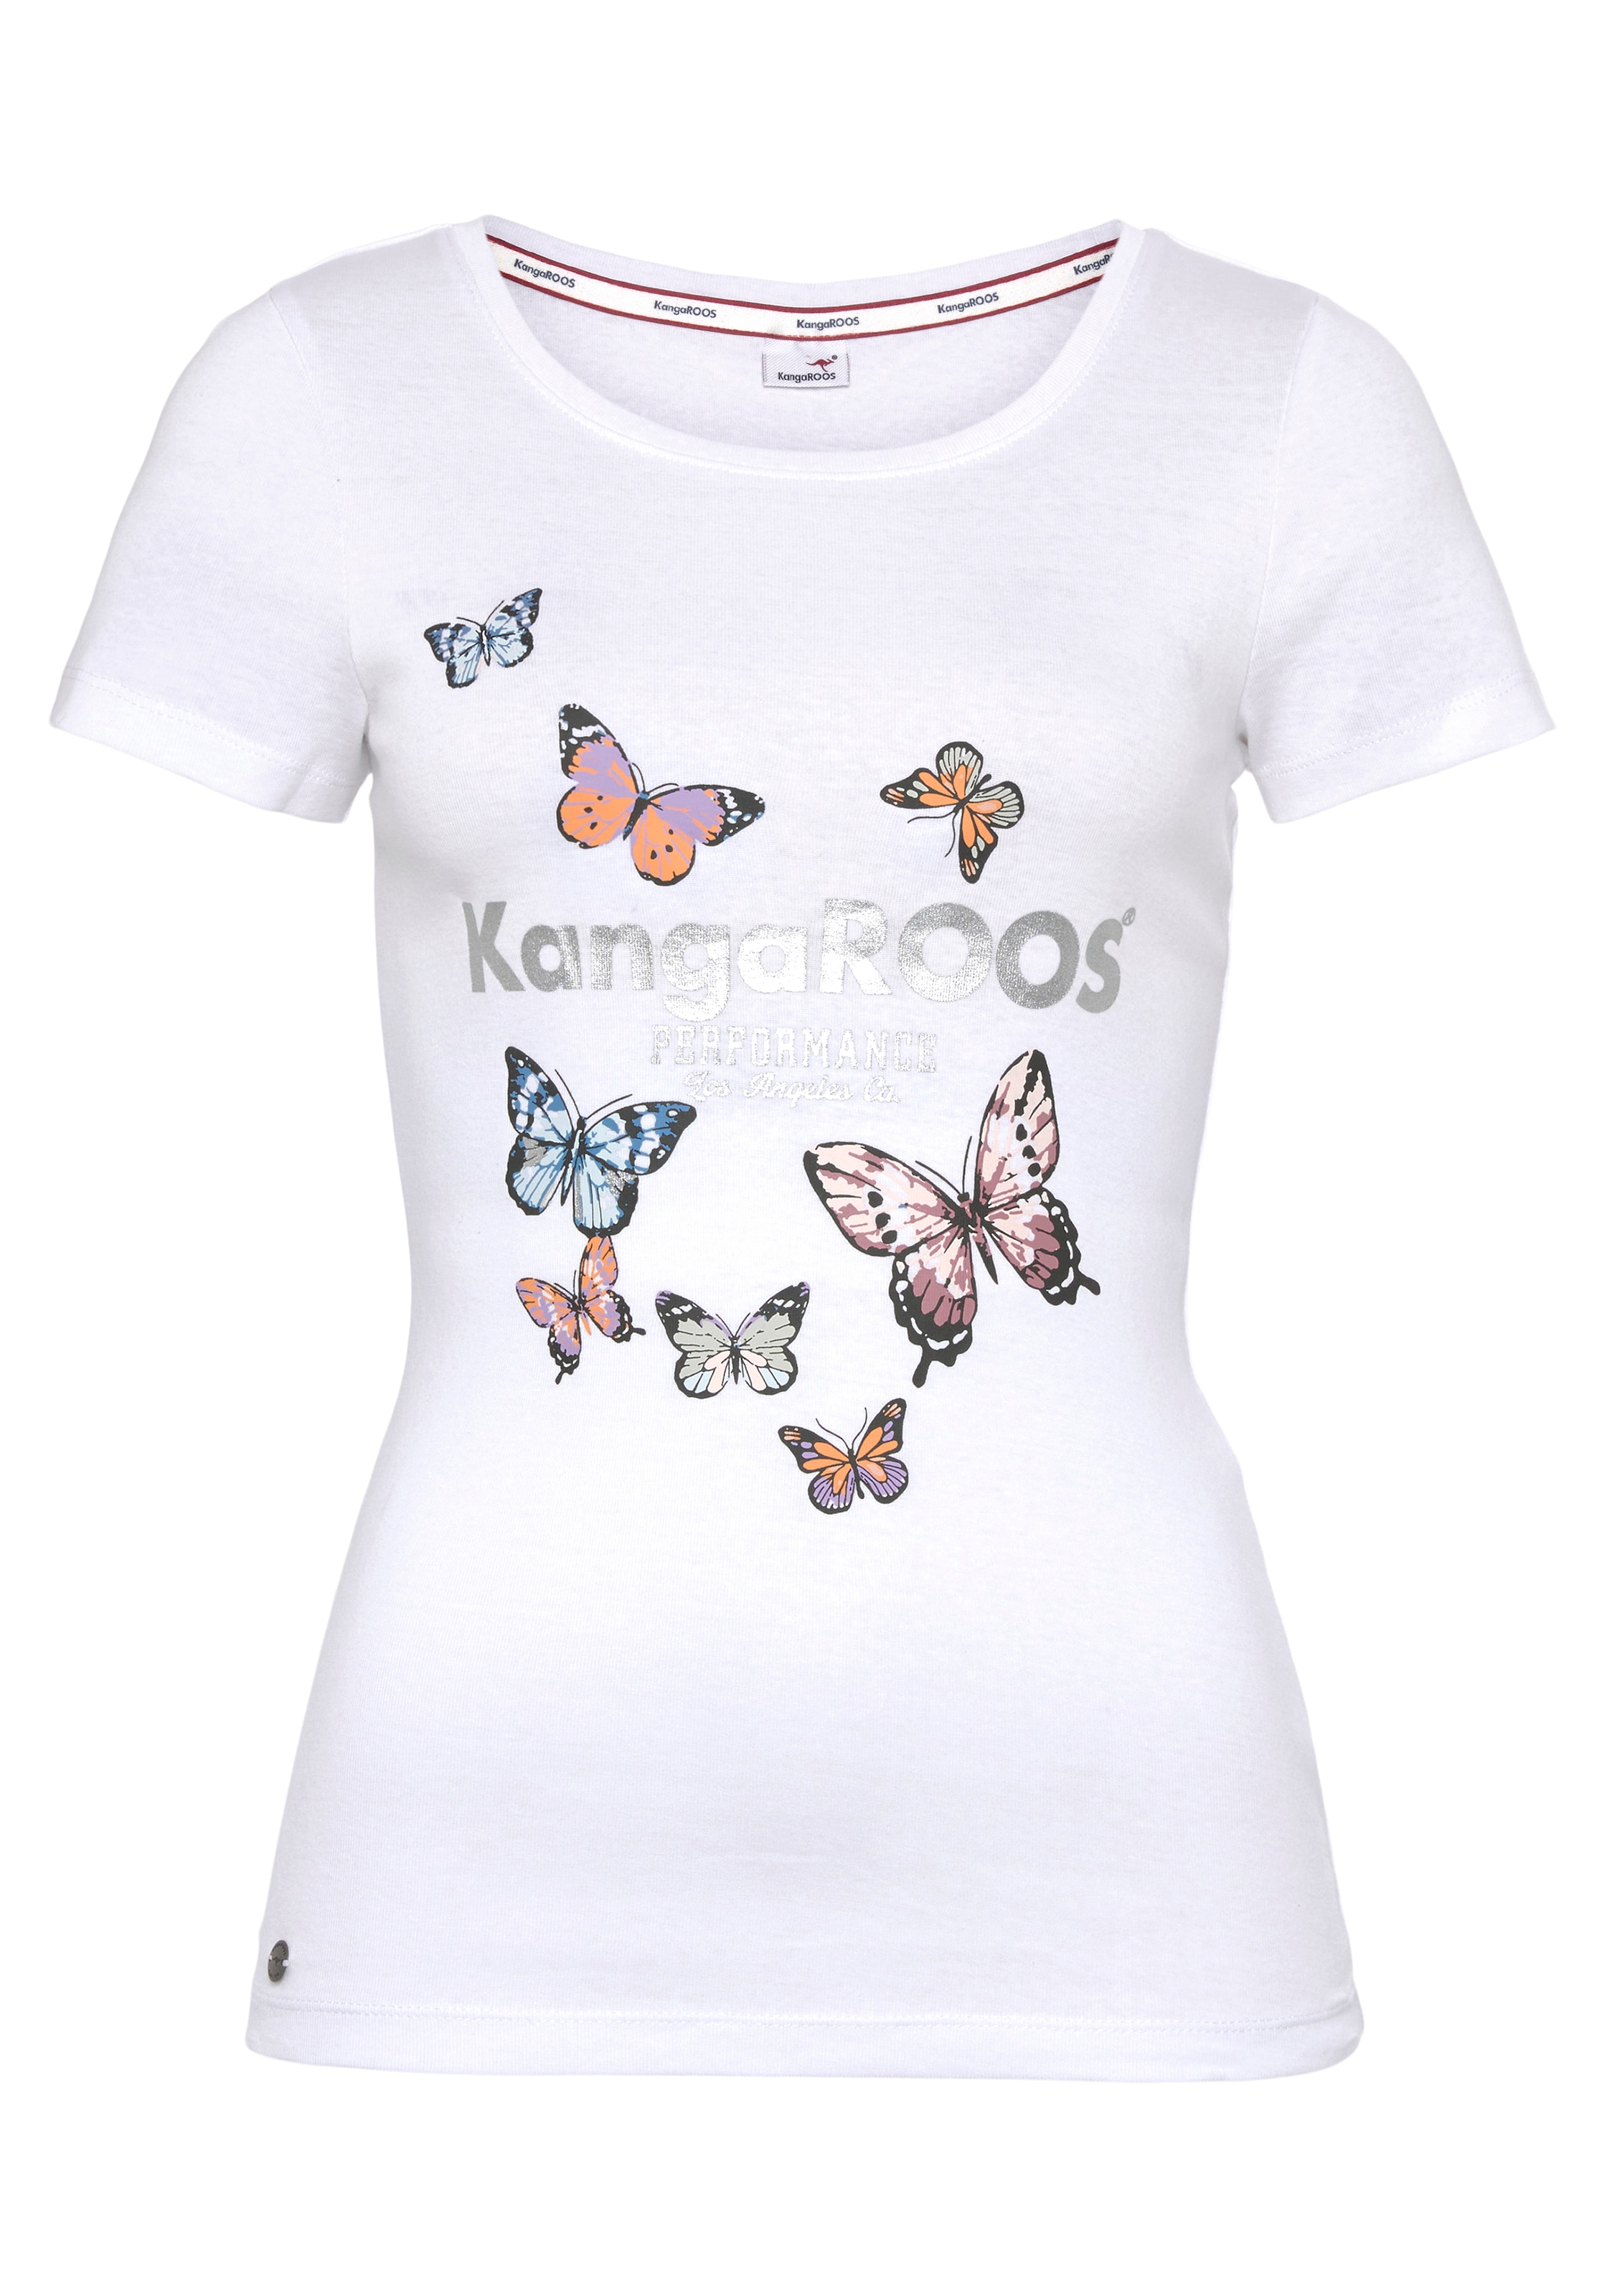 KangaROOS T-Shirt, mit süssem Logodruck & Schmetterlingen - NEUE KOLLEKTION  versandkostenfrei auf